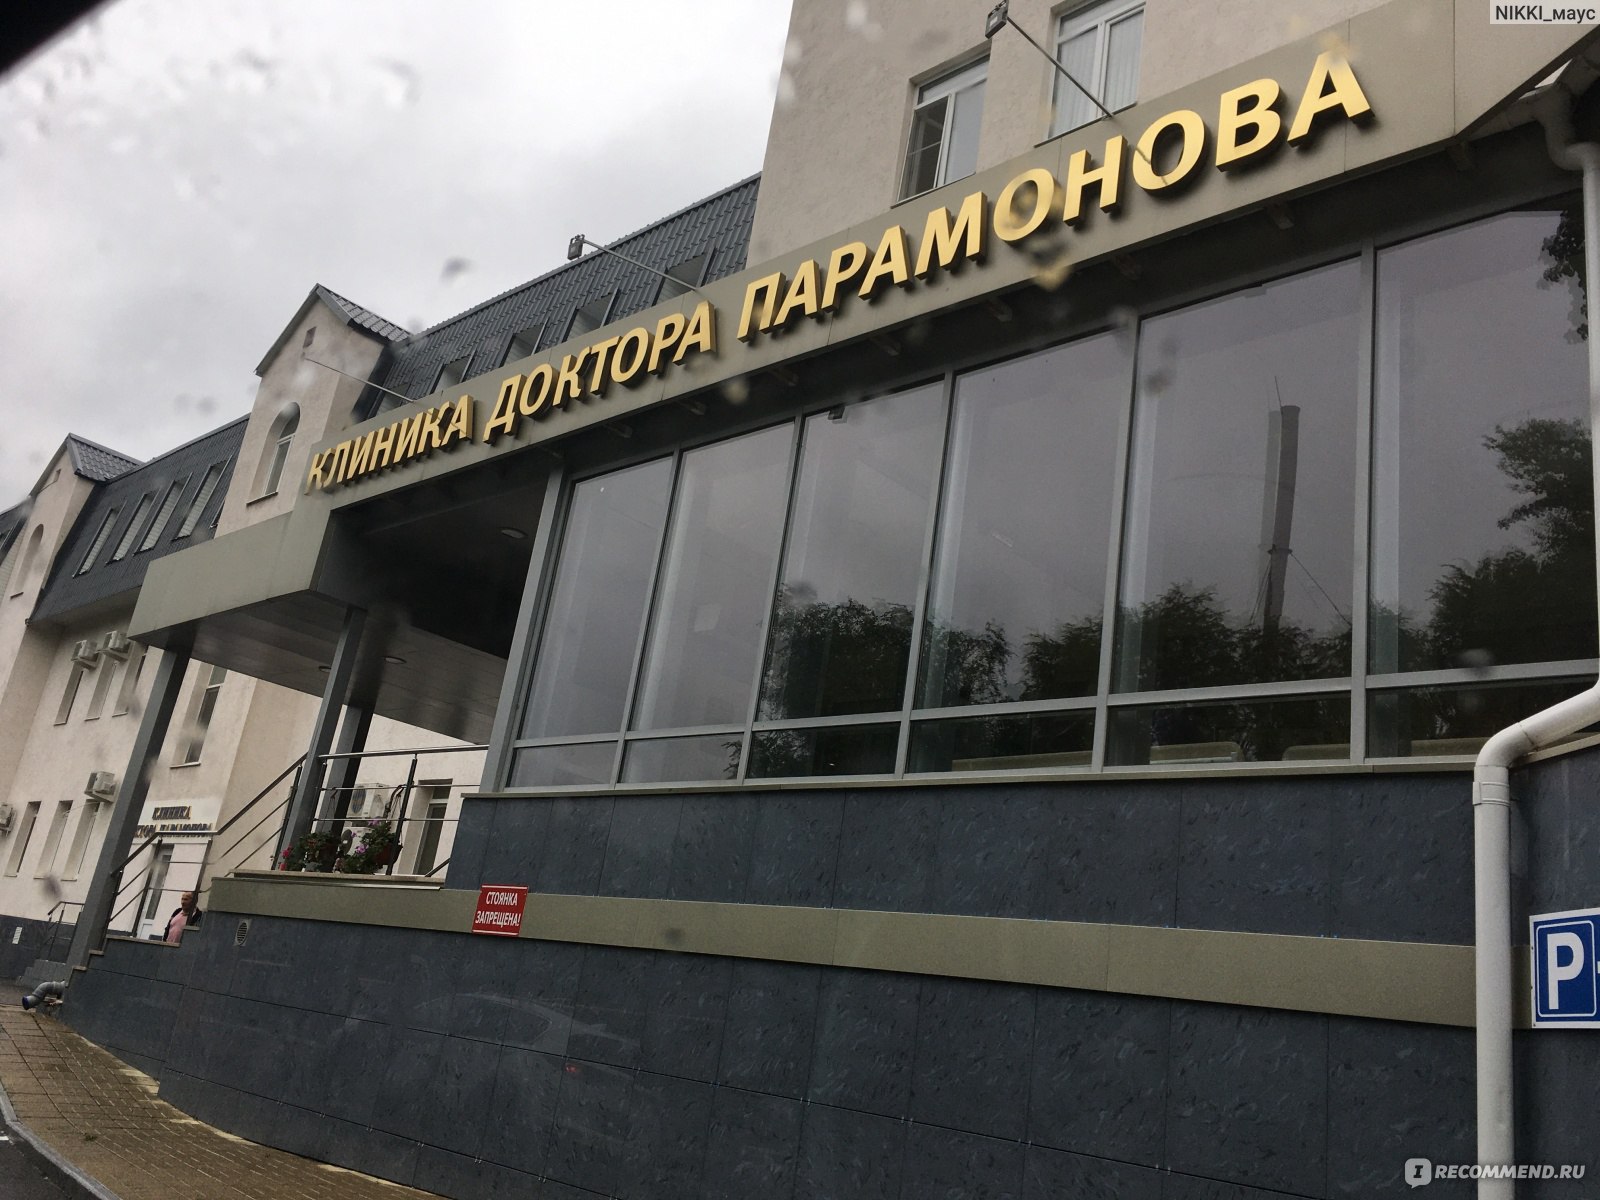 Парамонова клиника саратов телефон чапаева